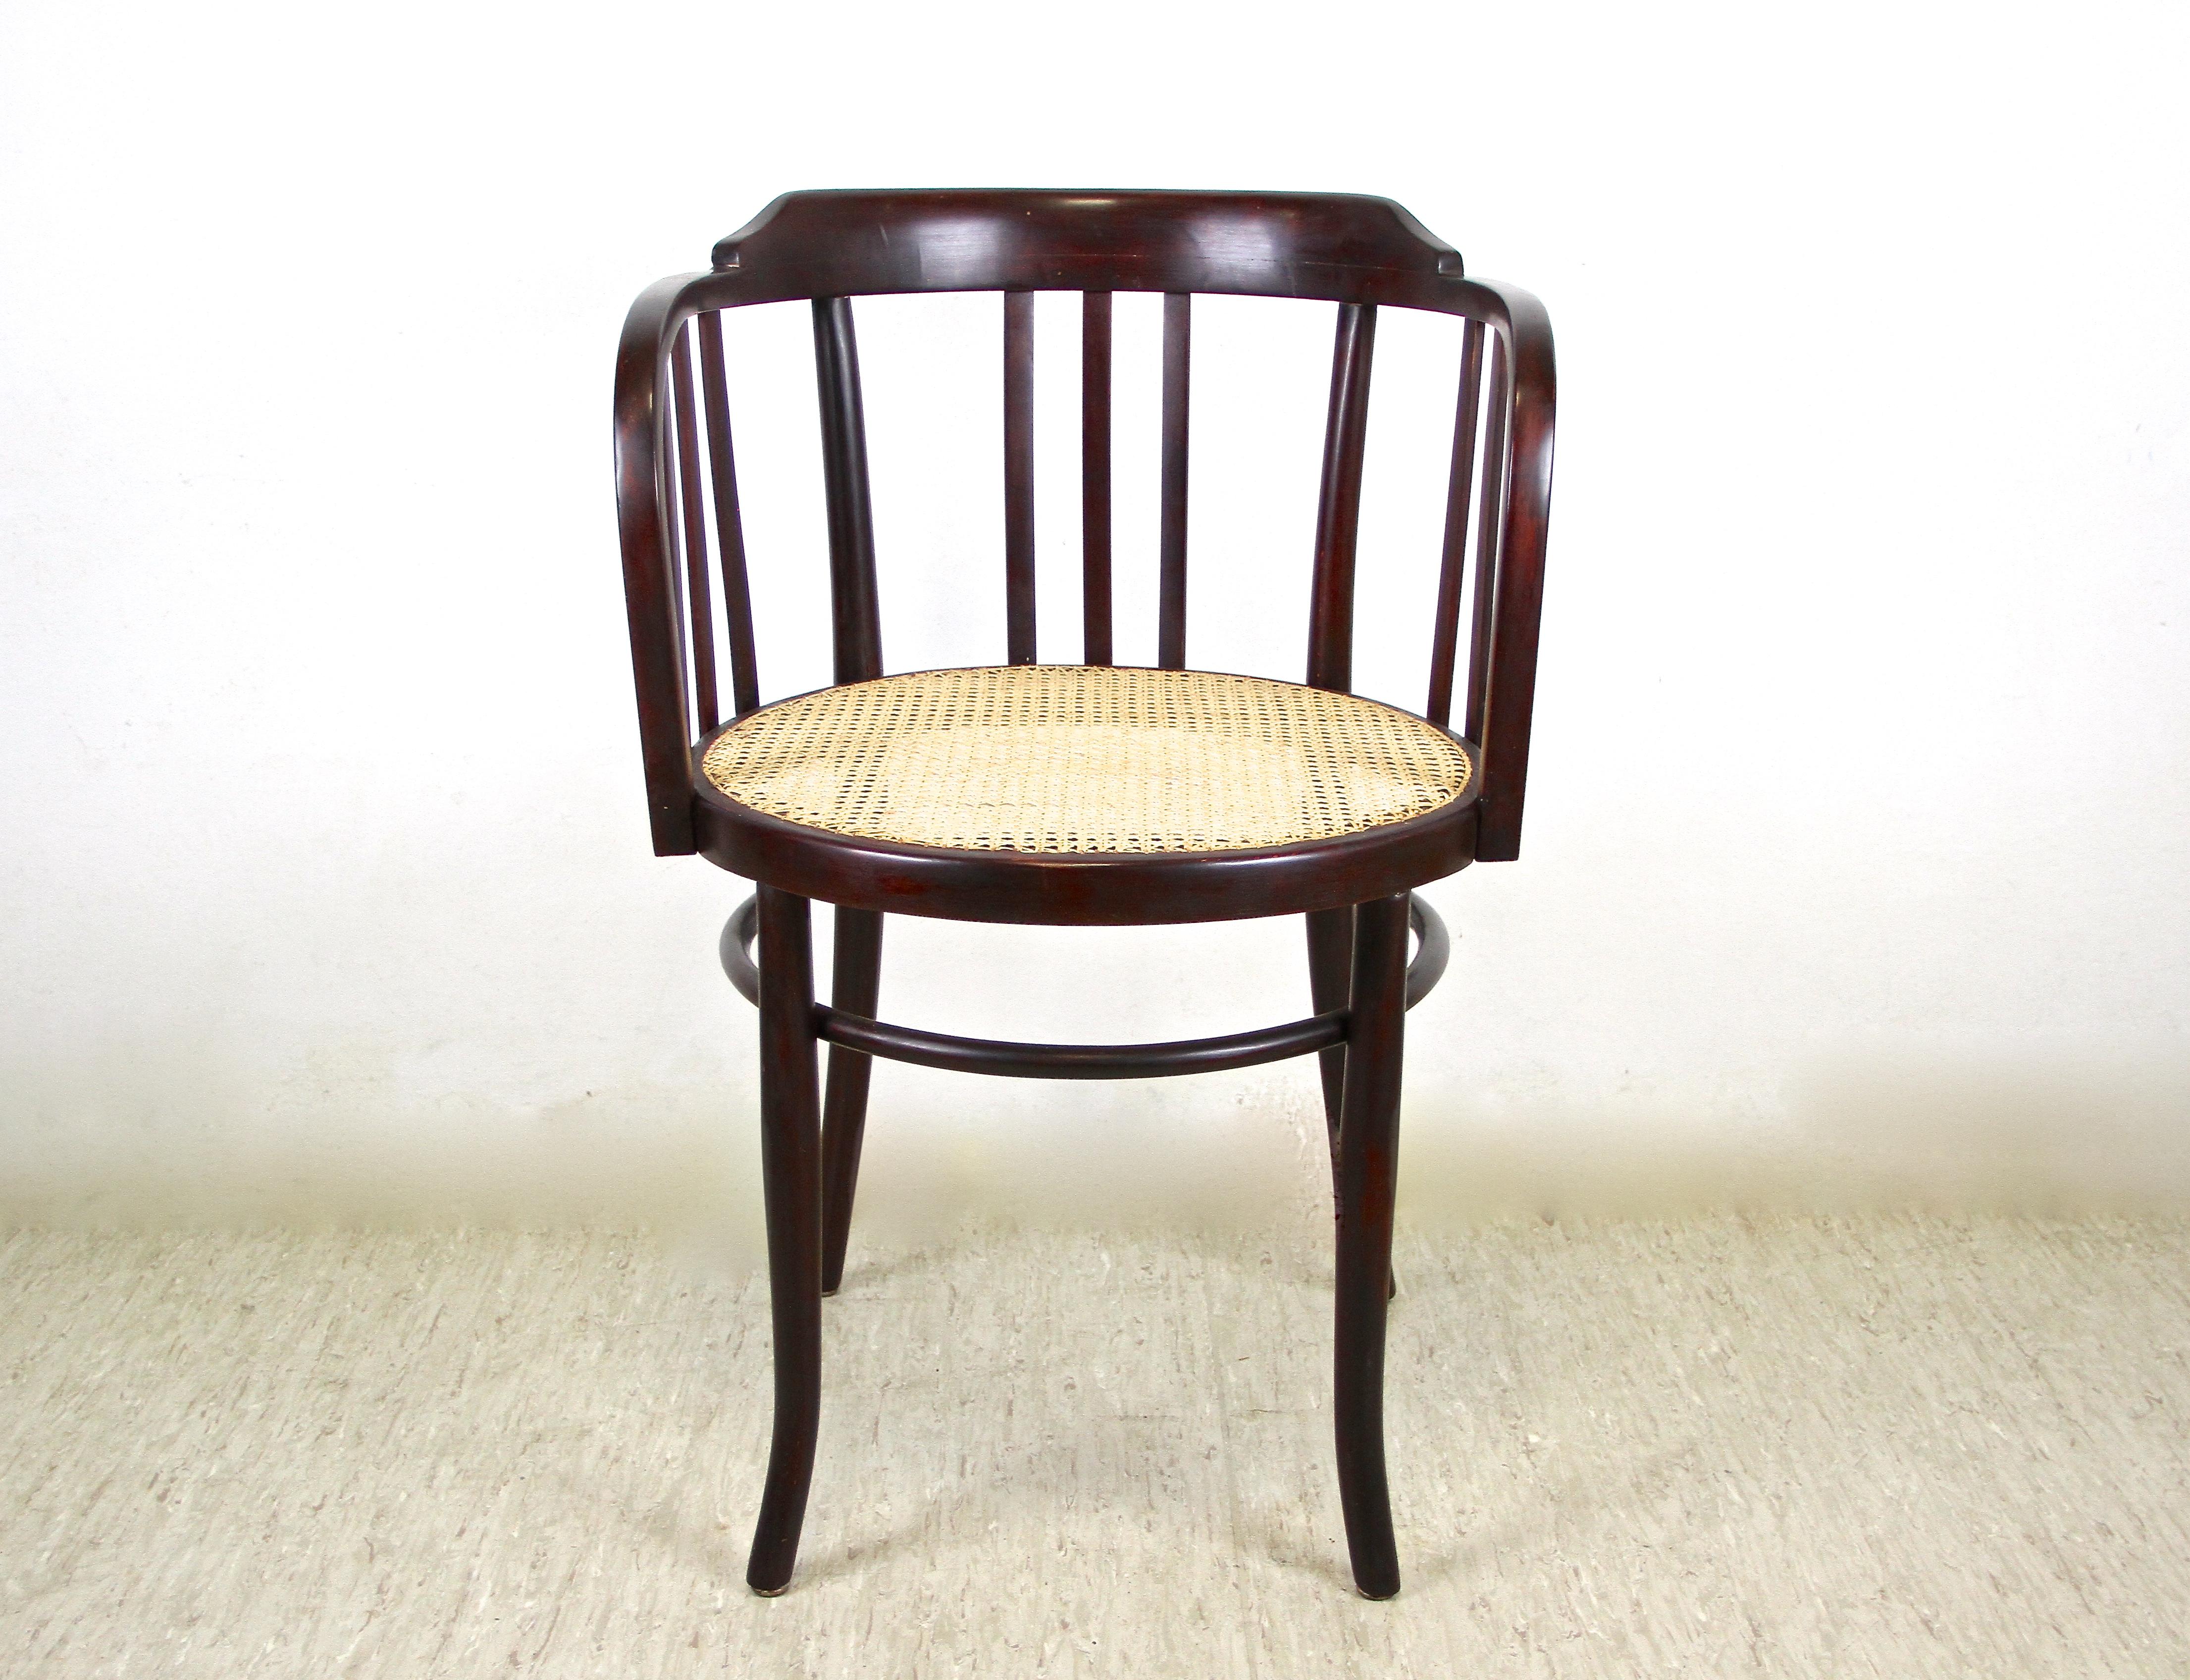 Beau fauteuil en bois courbé avec la maille viennoise, fabriqué avec art par la célèbre société Mundus vers 1906. Un chef-d'œuvre de design intemporel de la période Art nouveau en Autriche. Ce fauteuil de forme fantastique a été fabriqué en bois